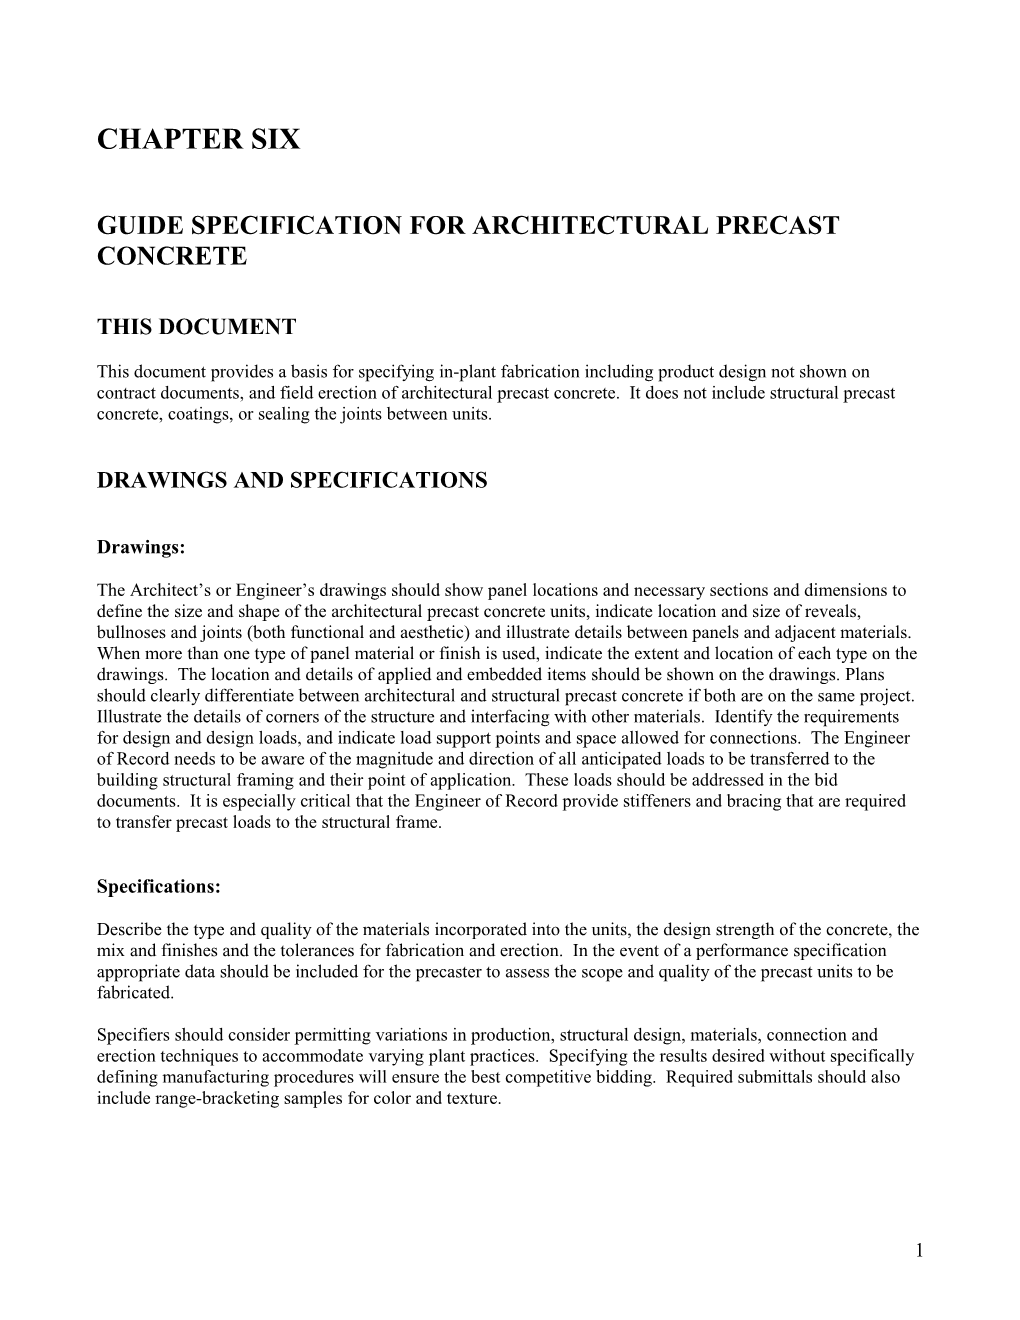 Guide Specification for Architectural Precast Concrete